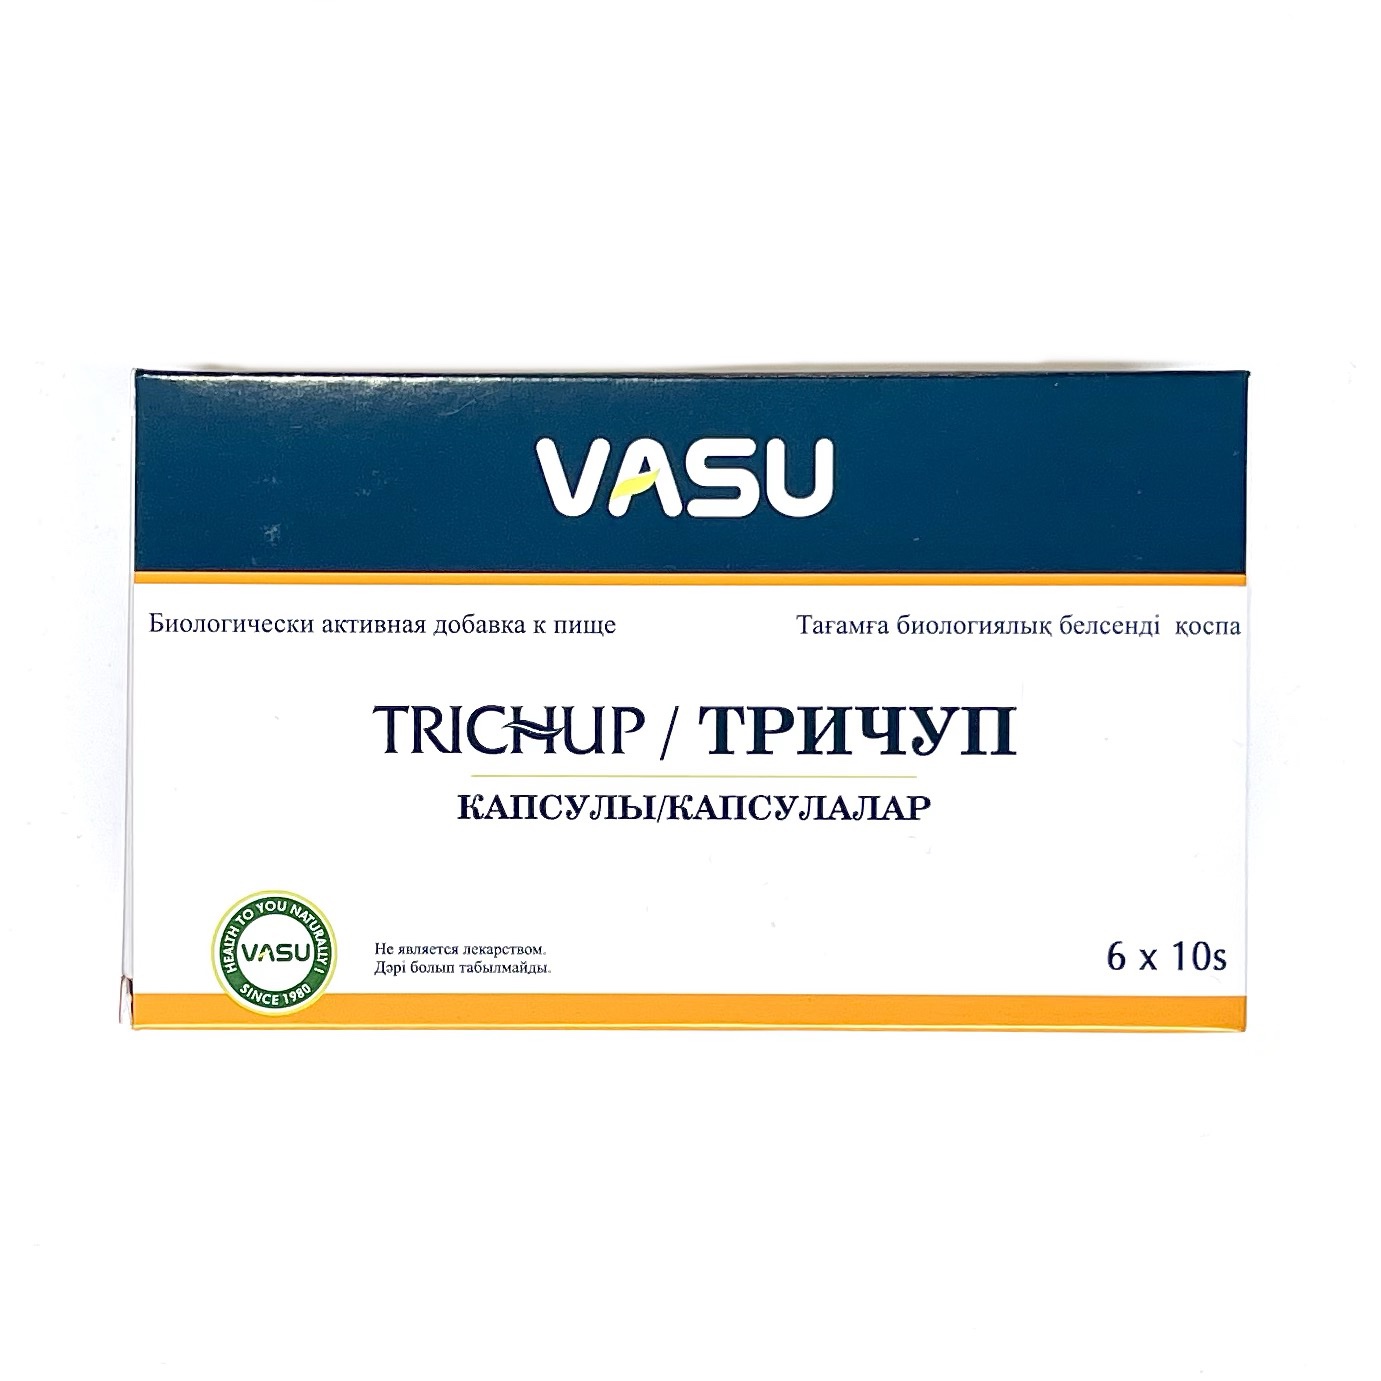 Биологически активная добавка к пище TRICHUP / ТРИЧУП, для питания волос (РУССКАЯ ЭТИКЕТКА), Vasu, 60 капс.